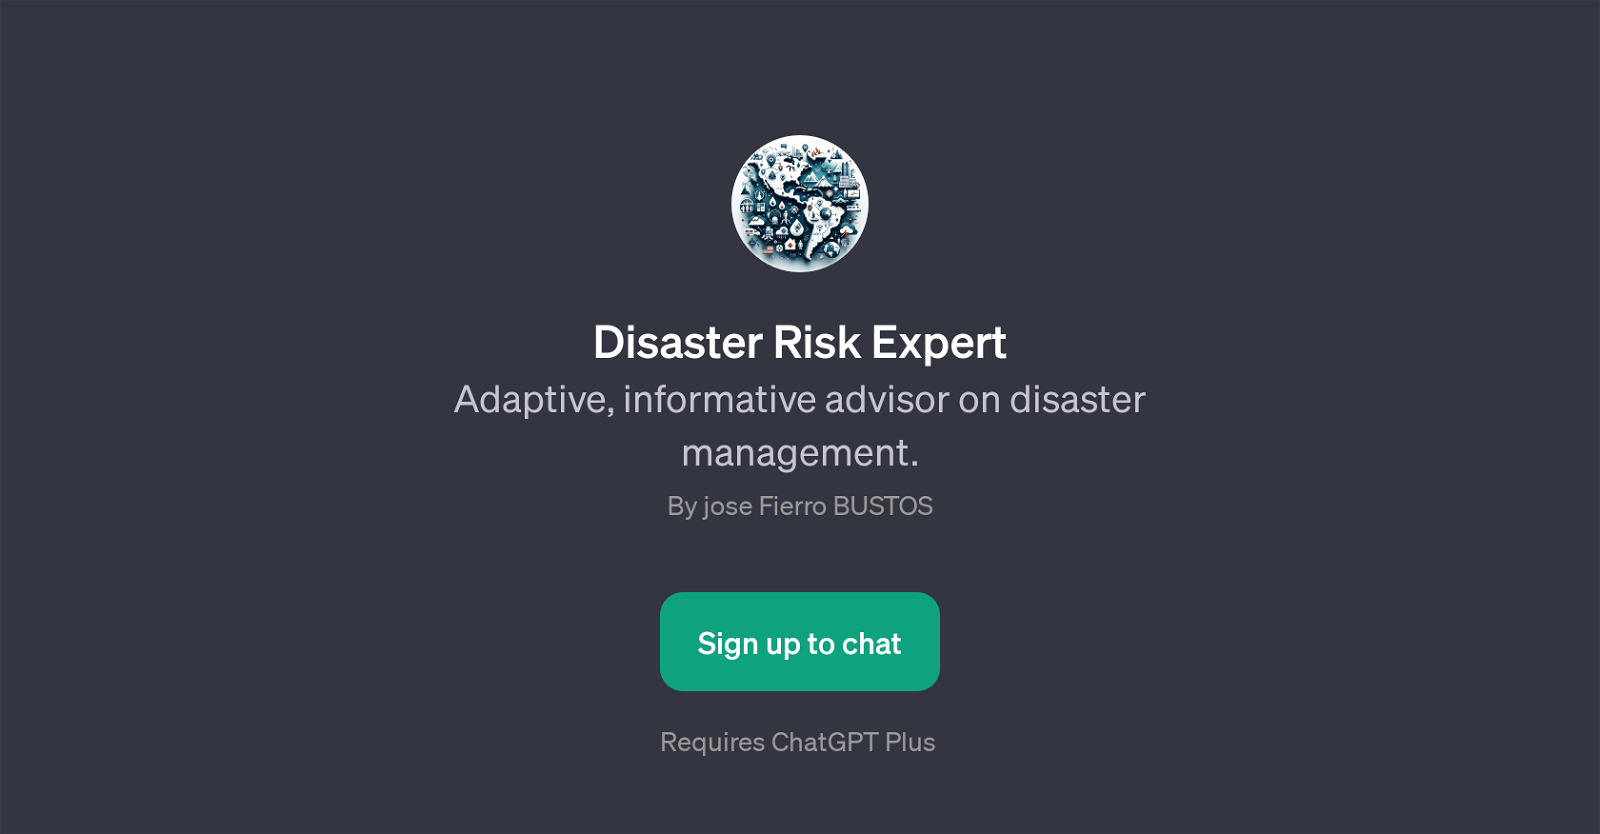 Disaster Risk Expert website